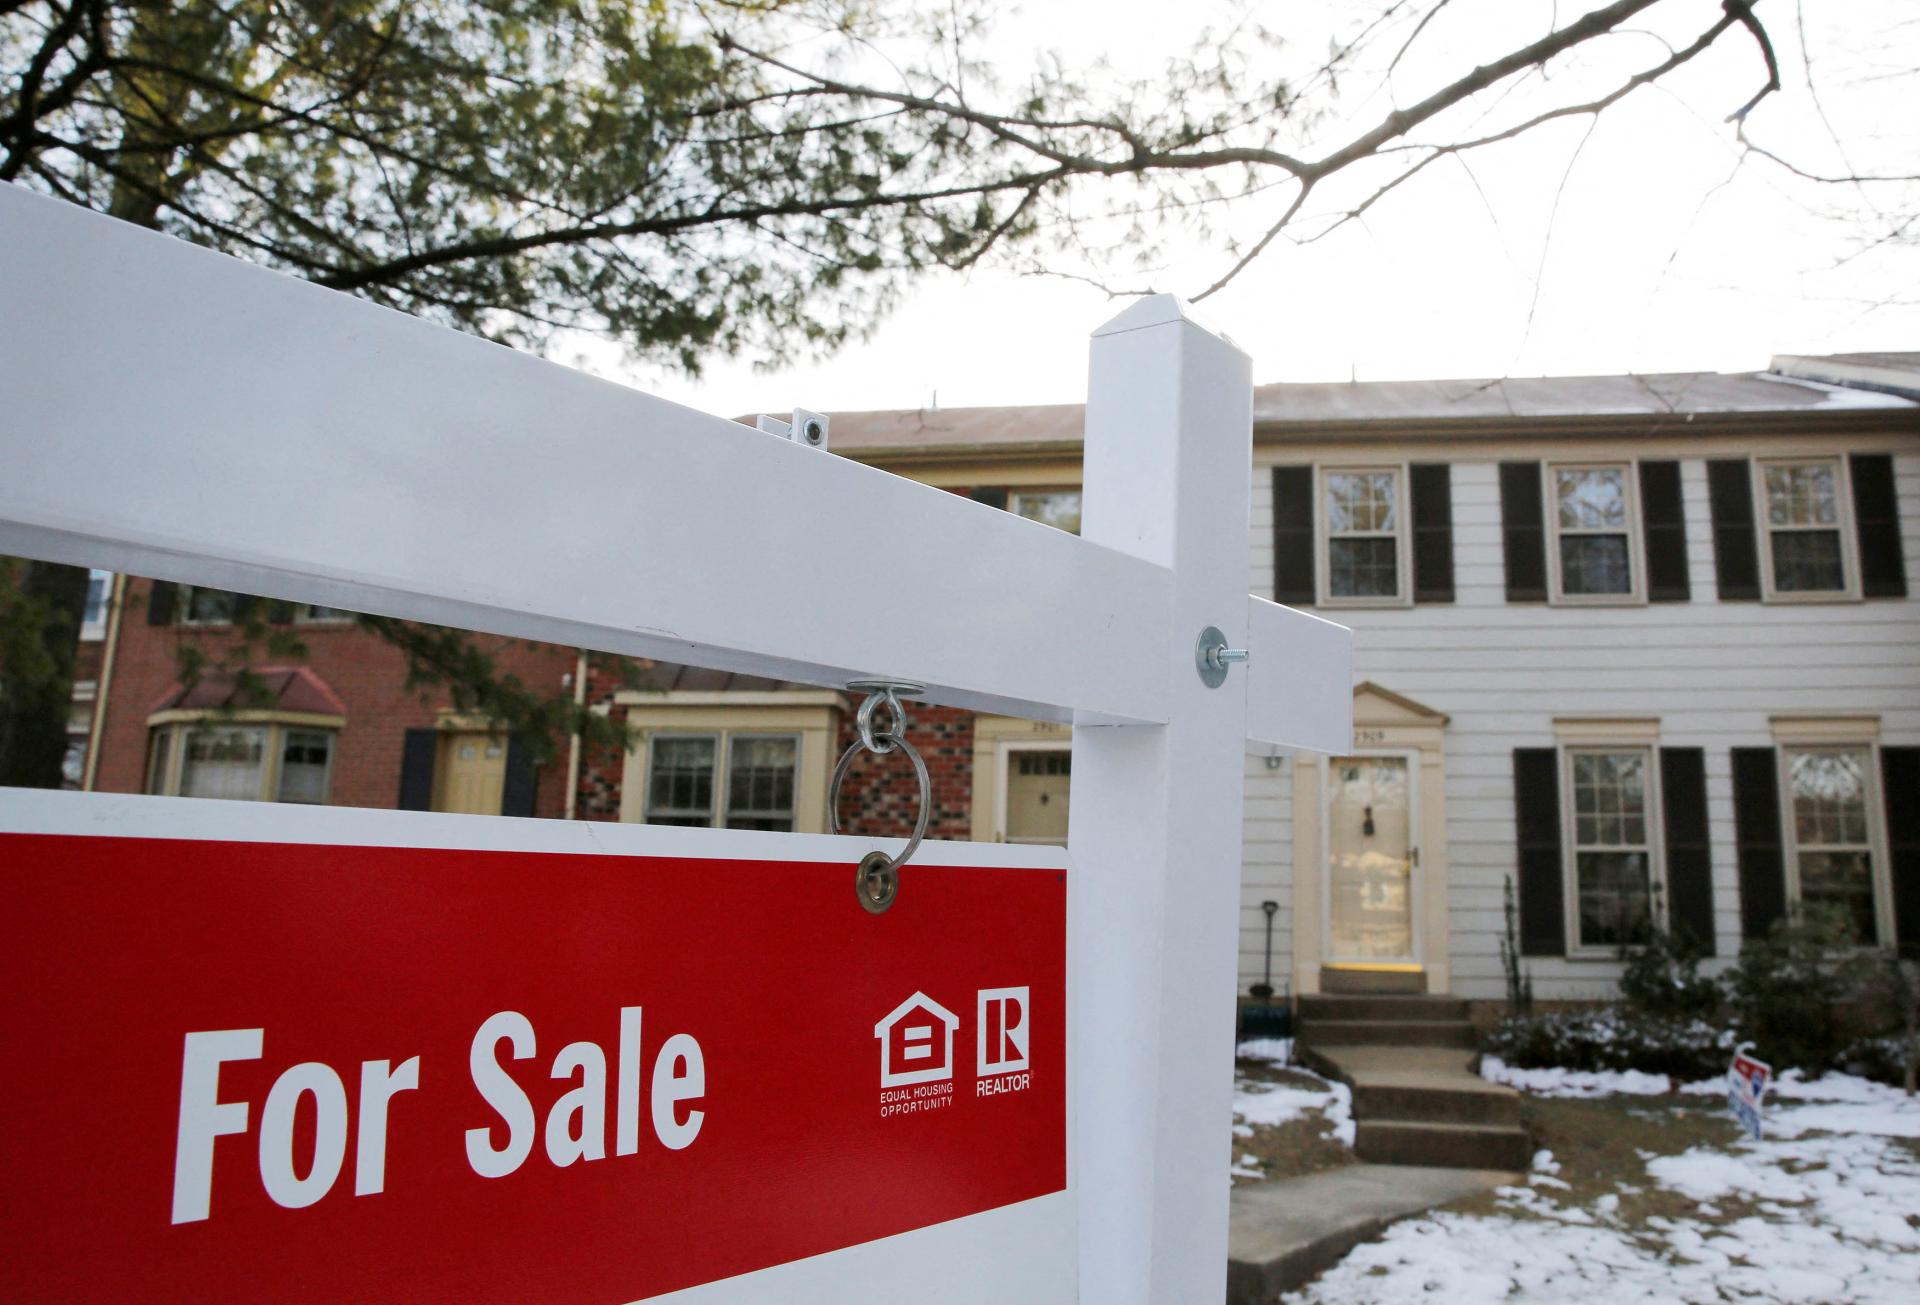 Predaj domov v Spojených štátoch cudzincom klesol na najnižšiu úroveň za viac než desaťročie